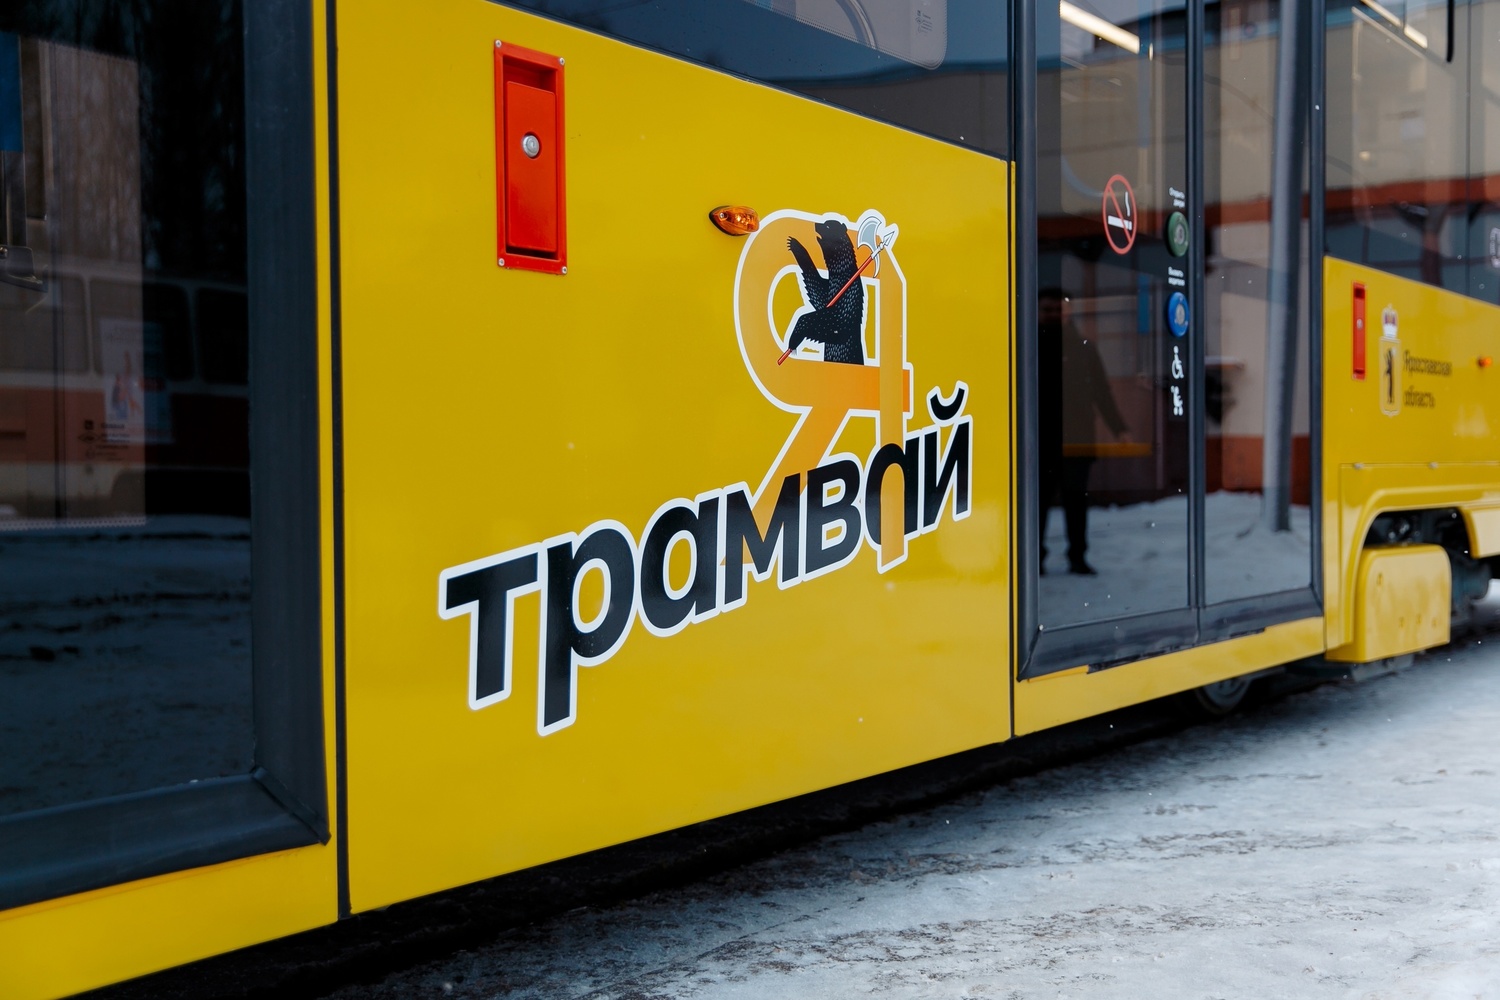 Транспортная реформа Ярославля: новые электробусы, трамваи, автобусы